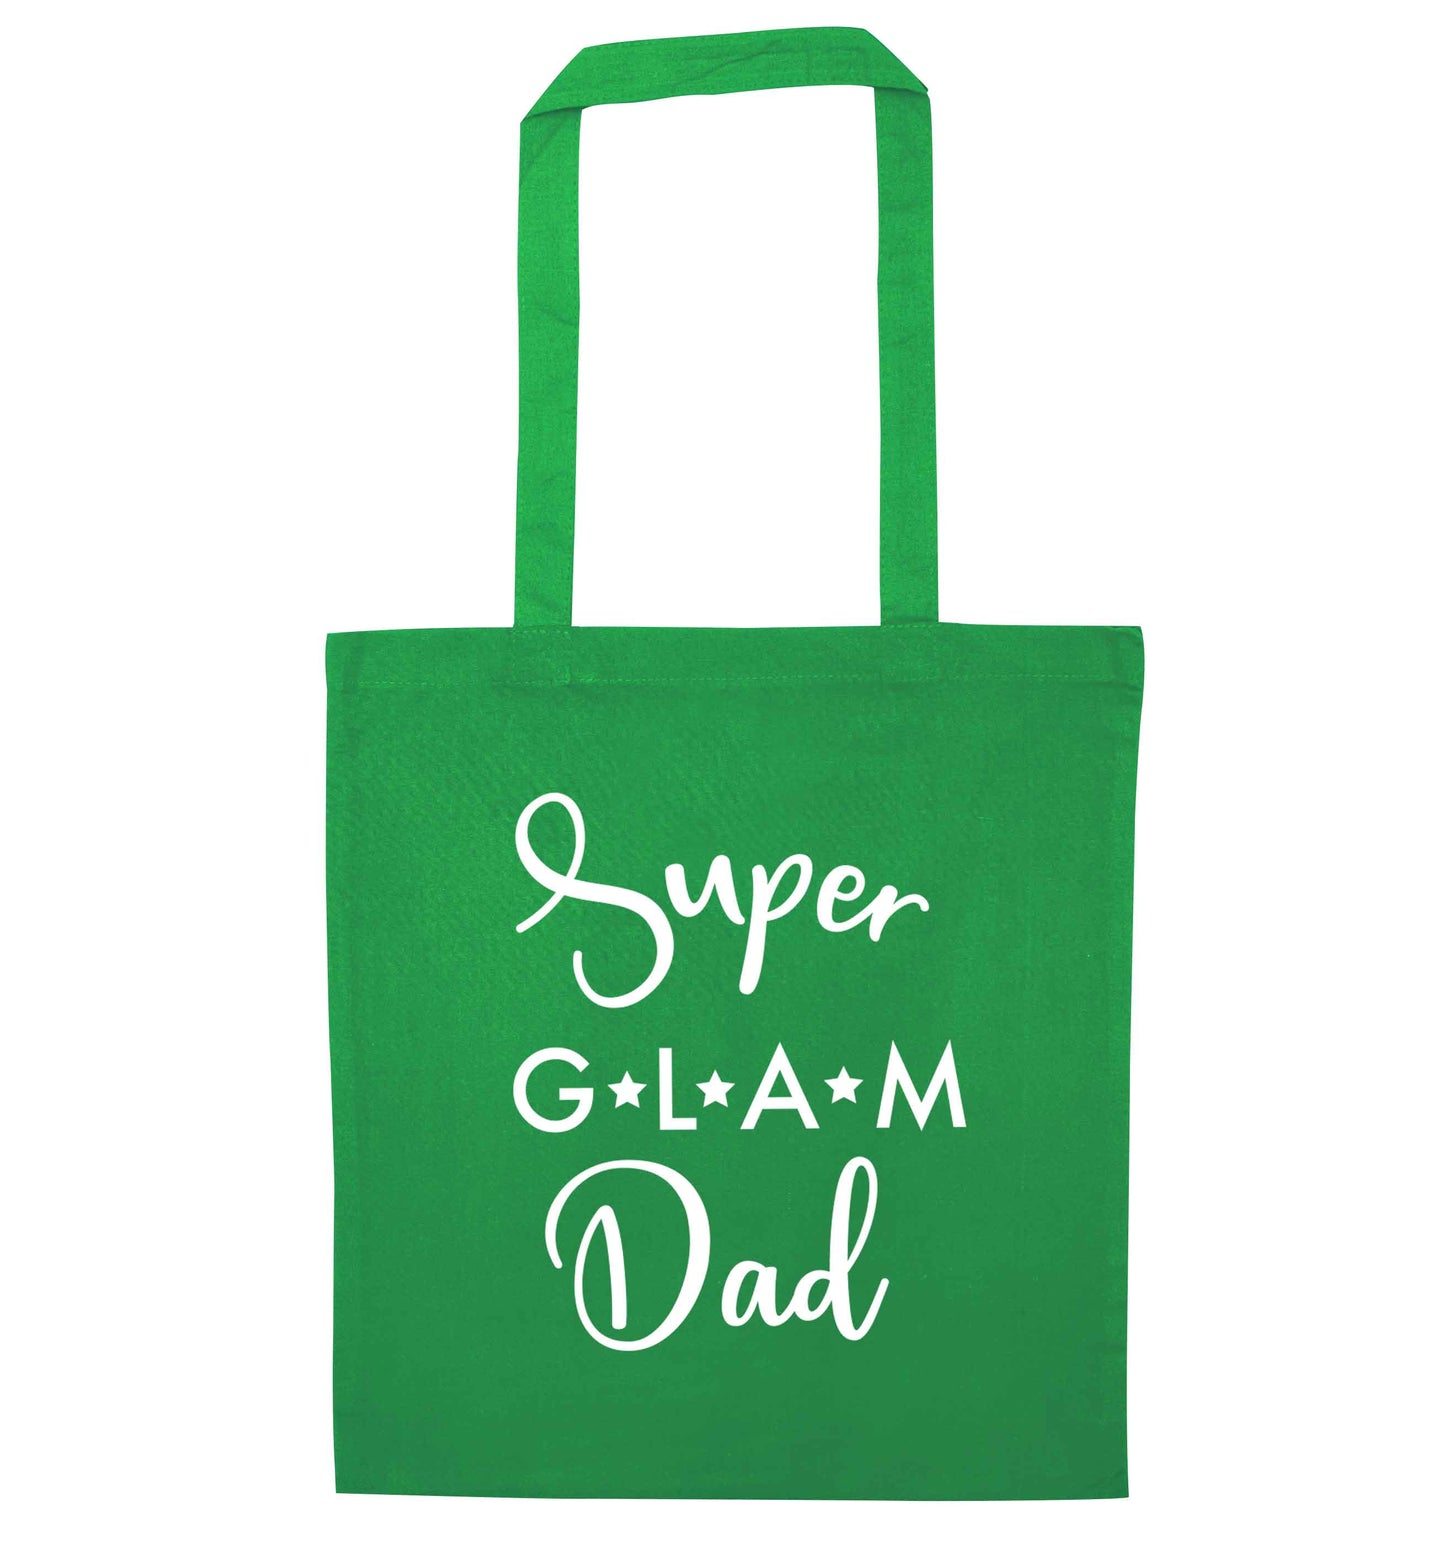 Super glam Dad green tote bag